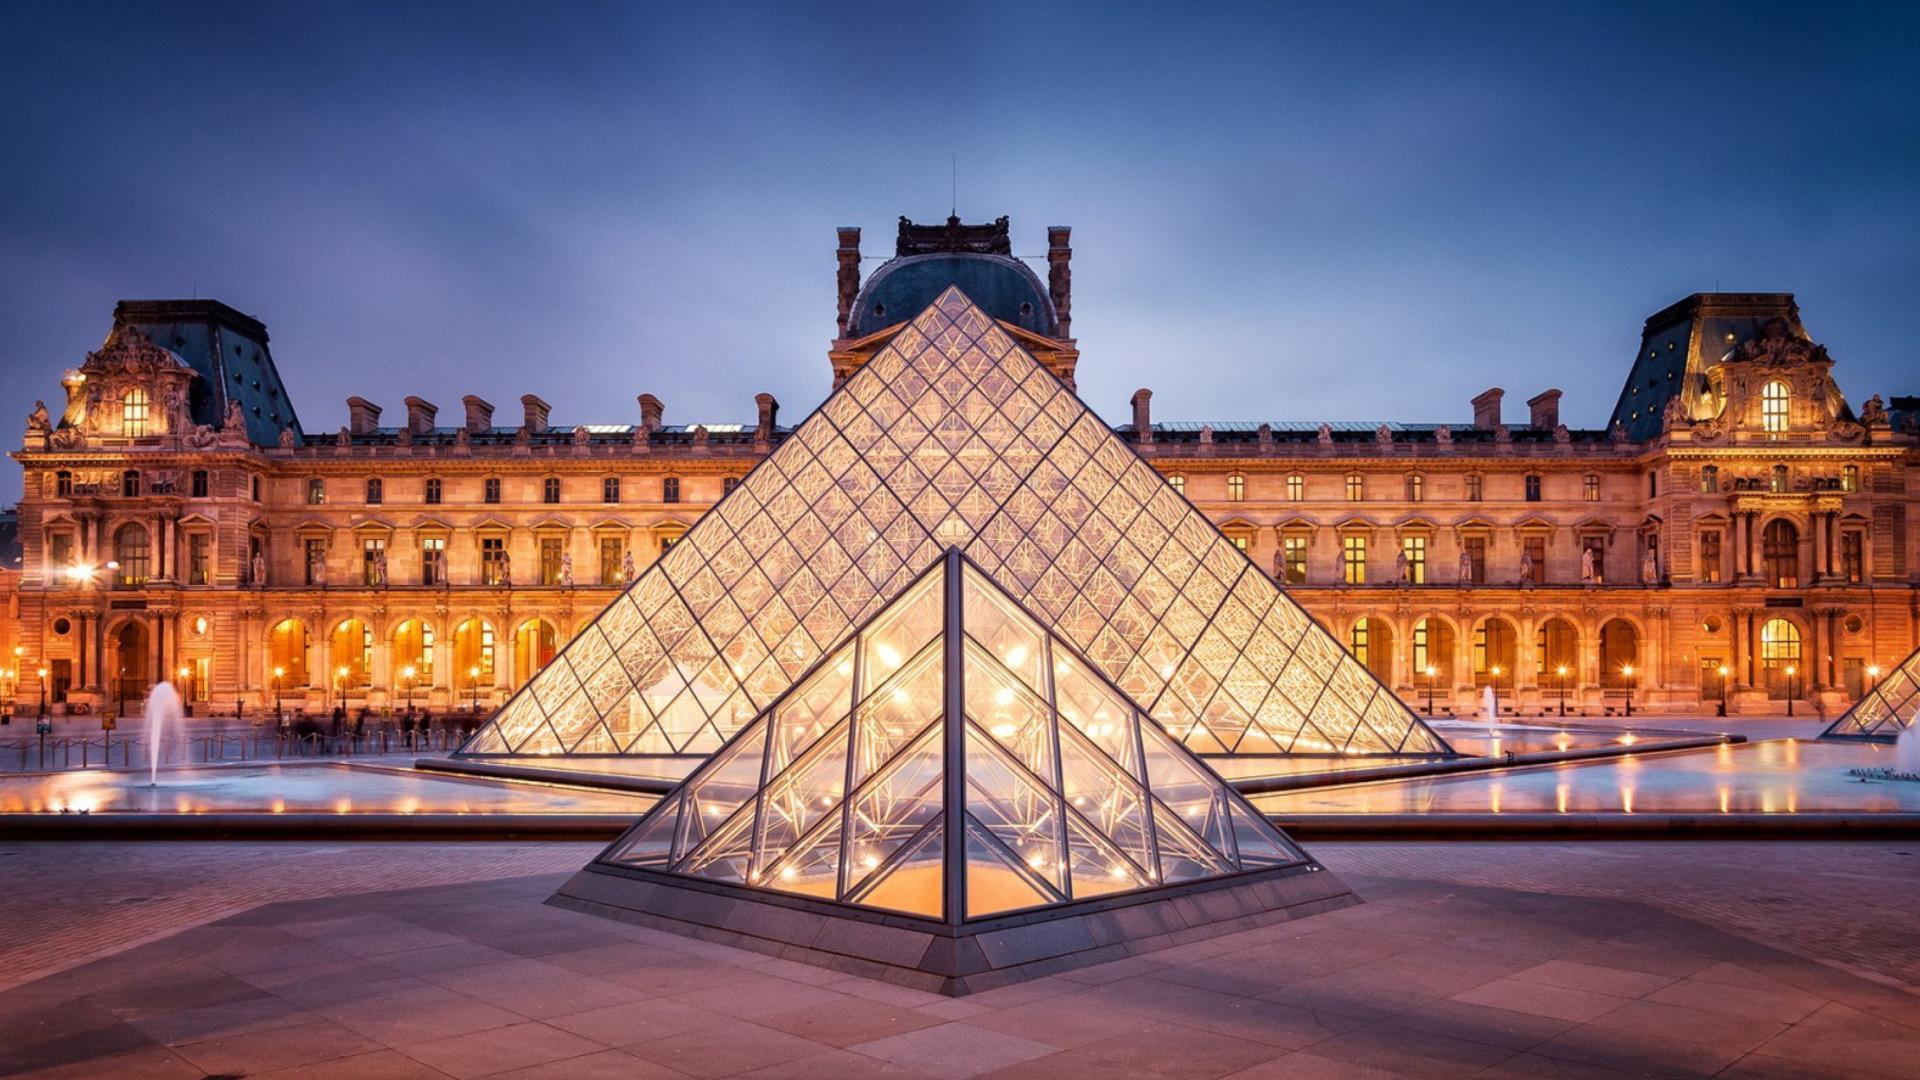 Kim tự tháp được làm bằng kính tại bảo tàng Louvre